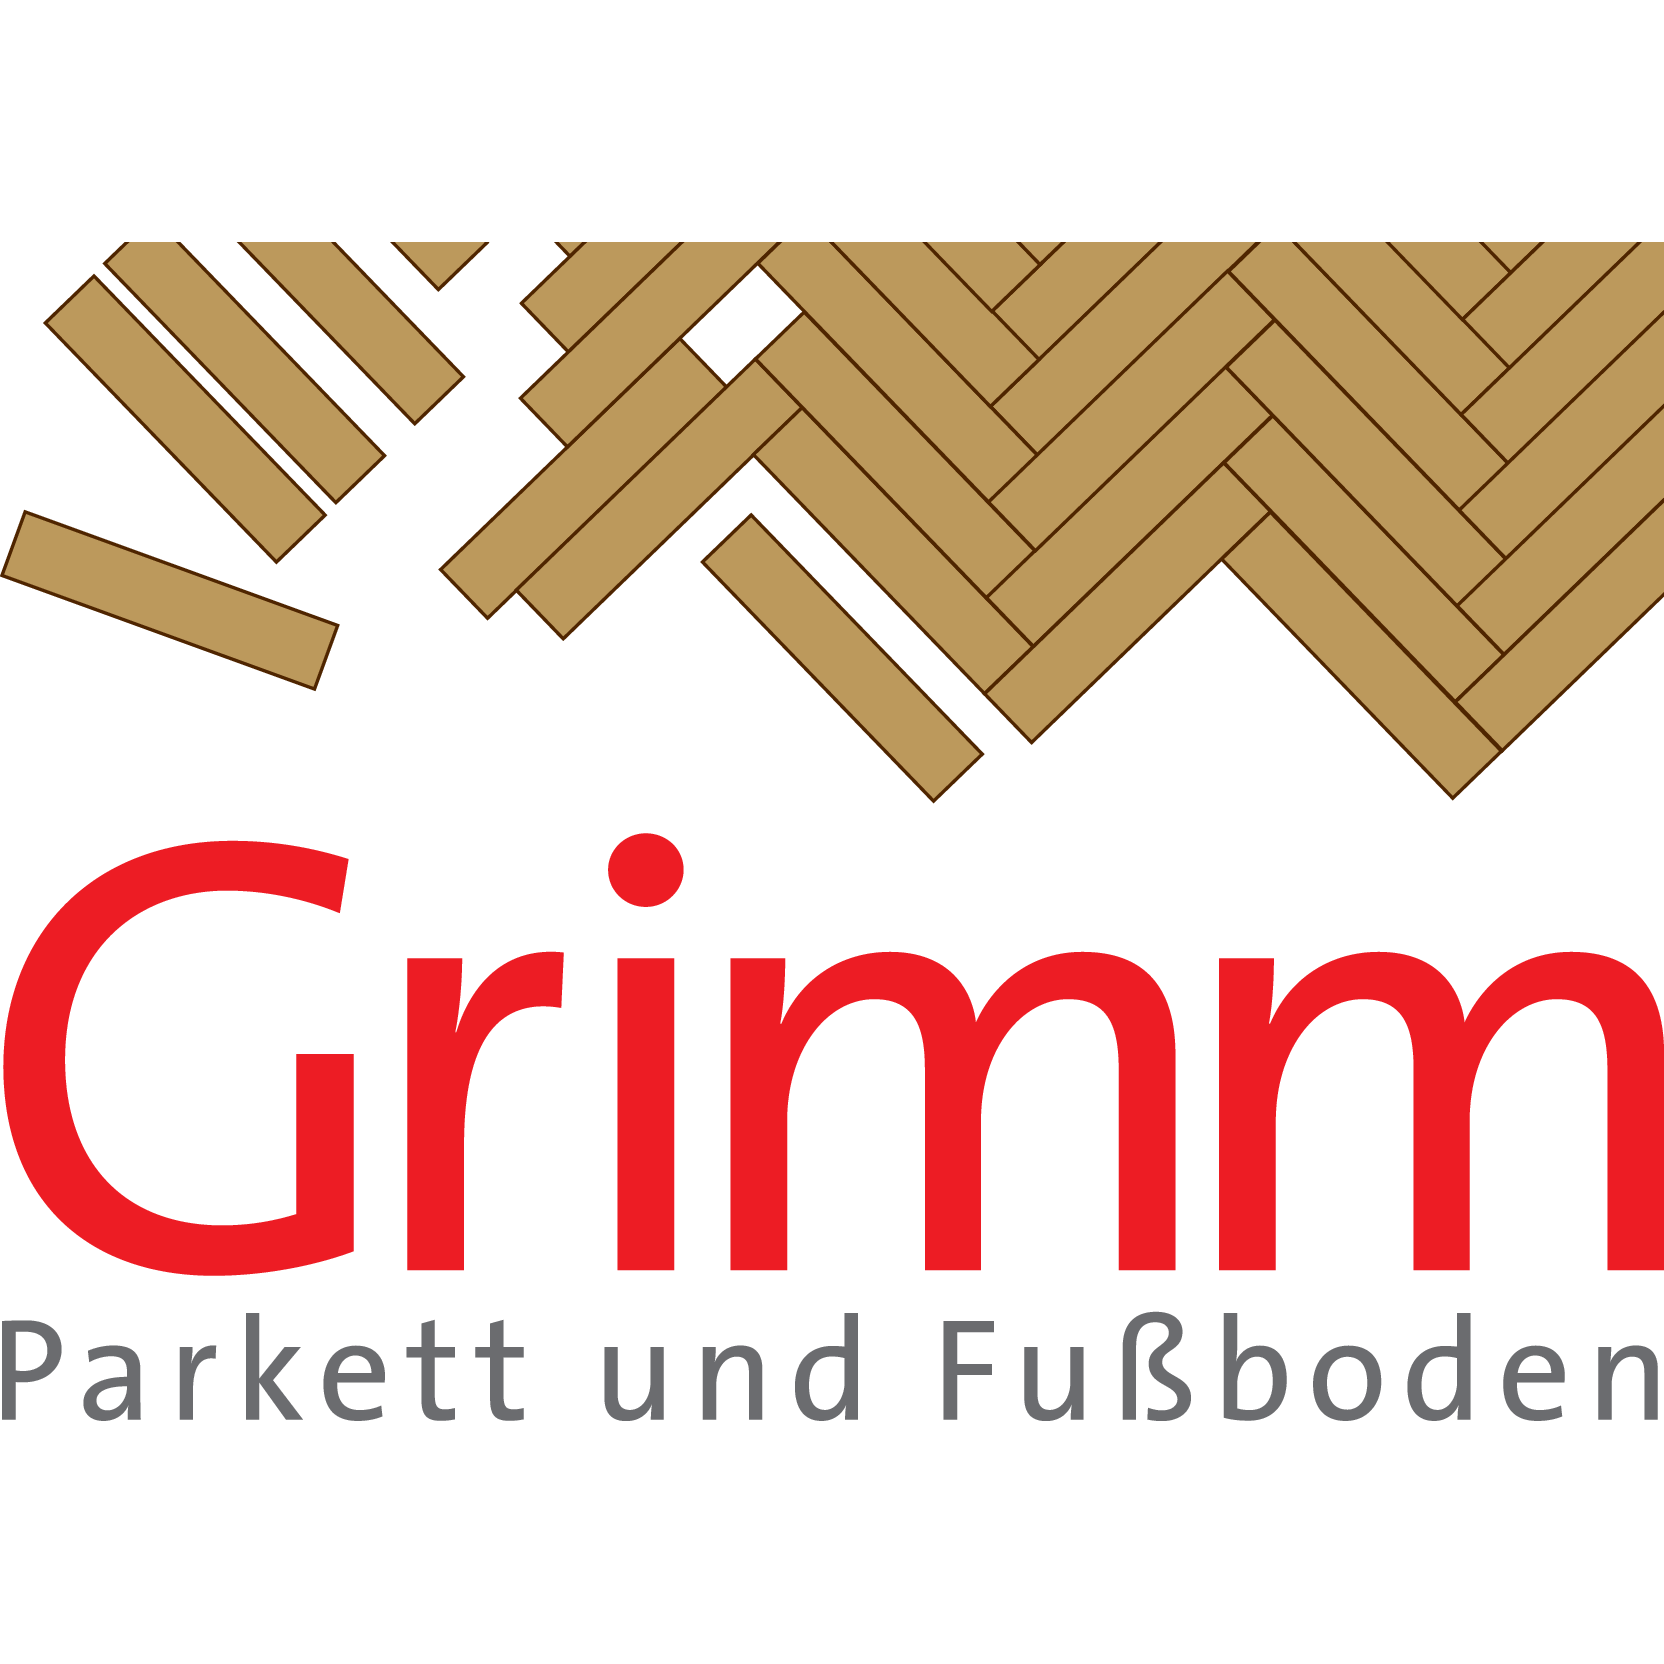 Grimm Parkett- und Fußboden GmbH & Co. KG